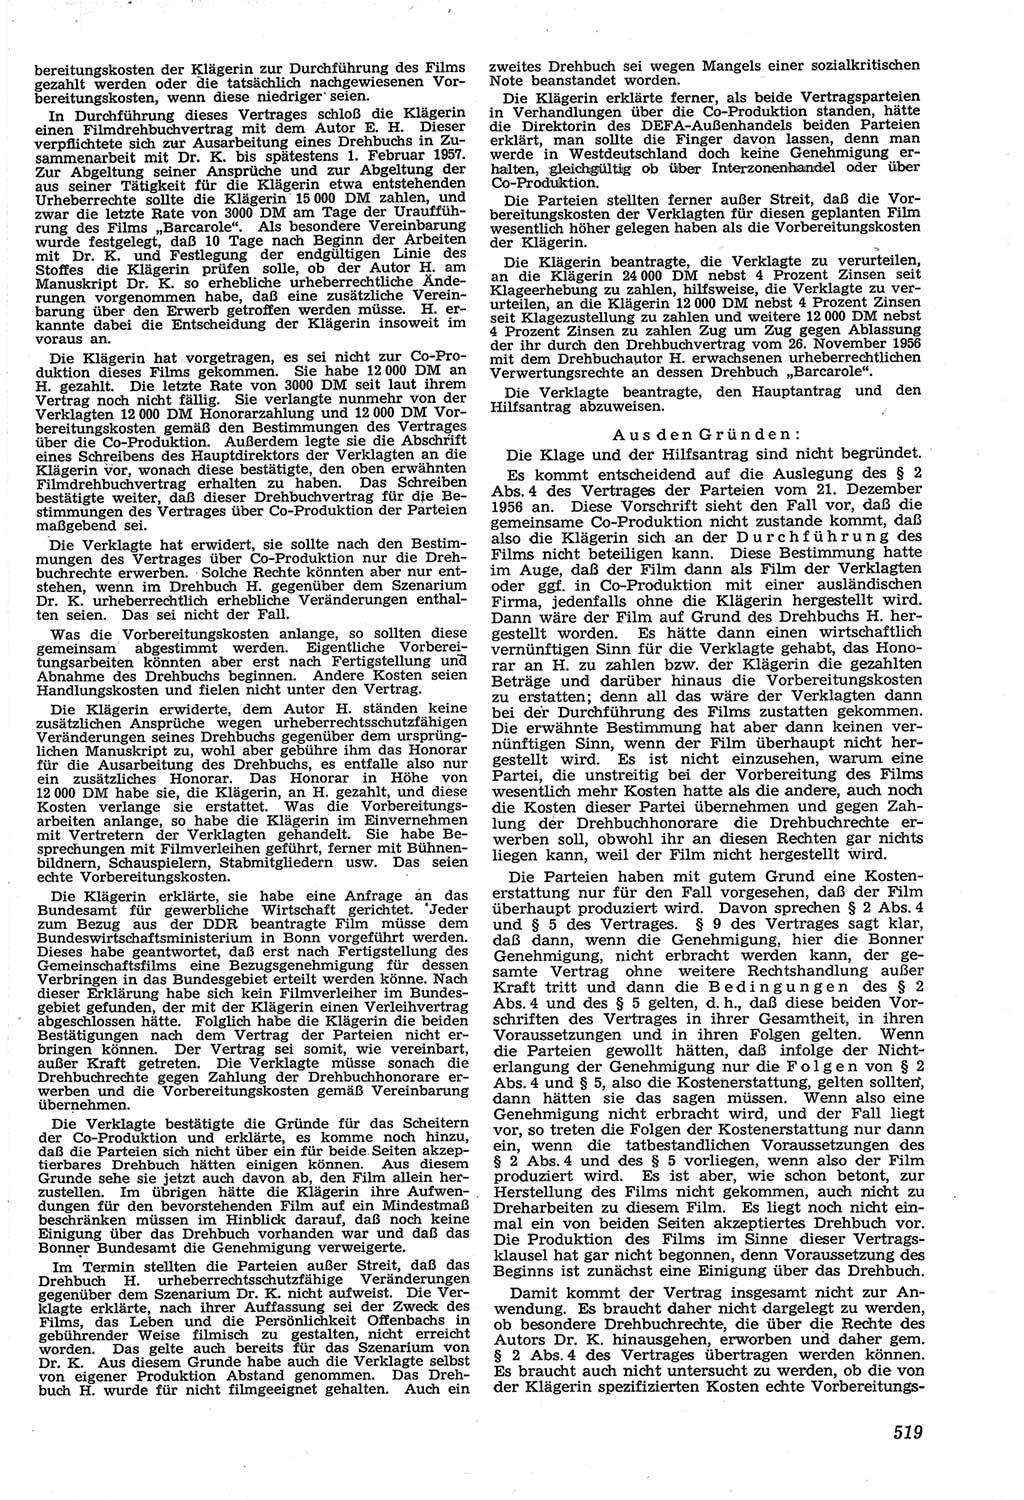 Neue Justiz (NJ), Zeitschrift für Recht und Rechtswissenschaft [Deutsche Demokratische Republik (DDR)], 14. Jahrgang 1960, Seite 519 (NJ DDR 1960, S. 519)